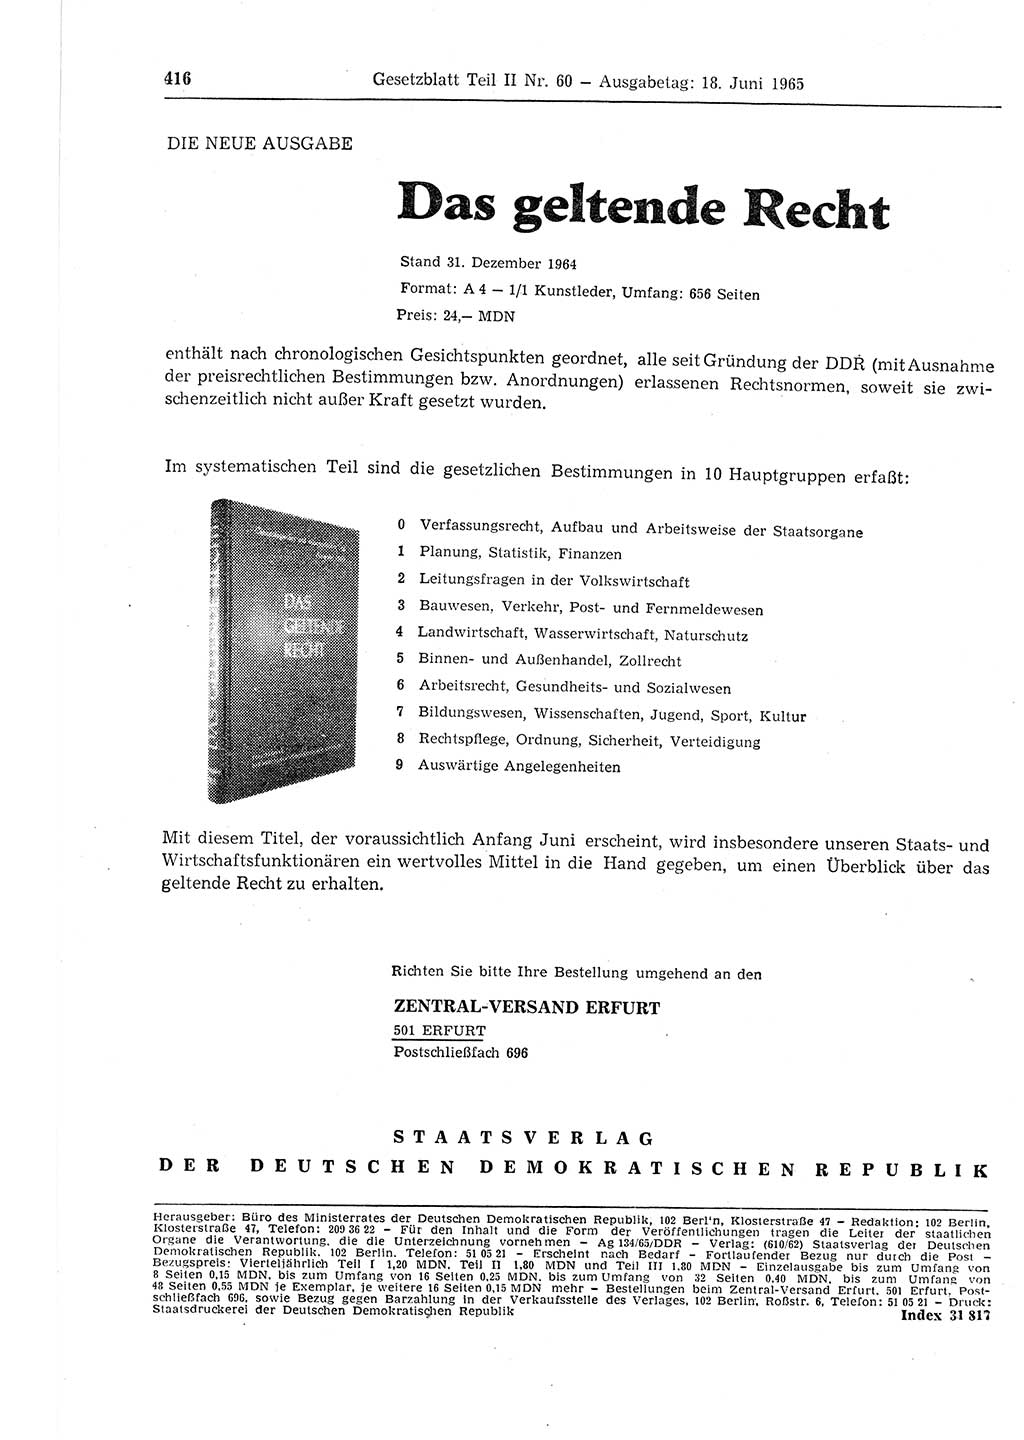 Gesetzblatt (GBl.) der Deutschen Demokratischen Republik (DDR) Teil ⅠⅠ 1965, Seite 416 (GBl. DDR ⅠⅠ 1965, S. 416)